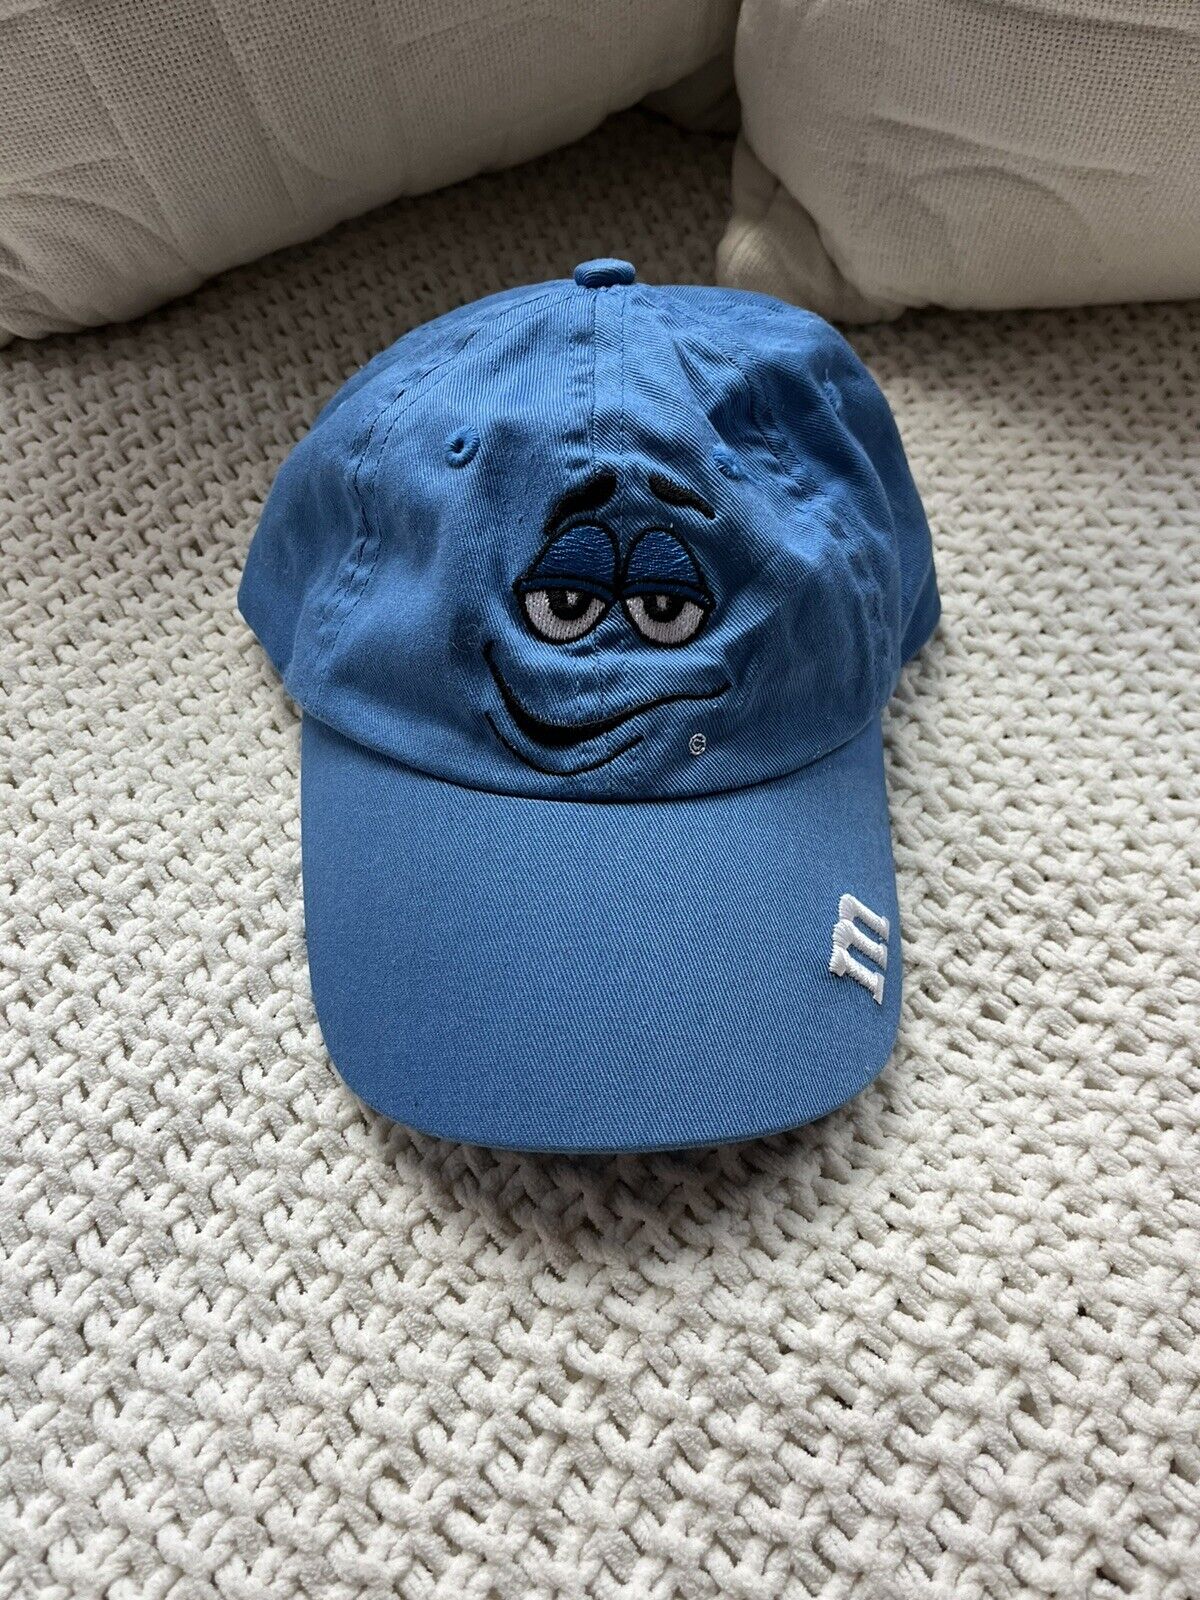 VINTAGE M&M Child’s Hat With Original Mars Trademark